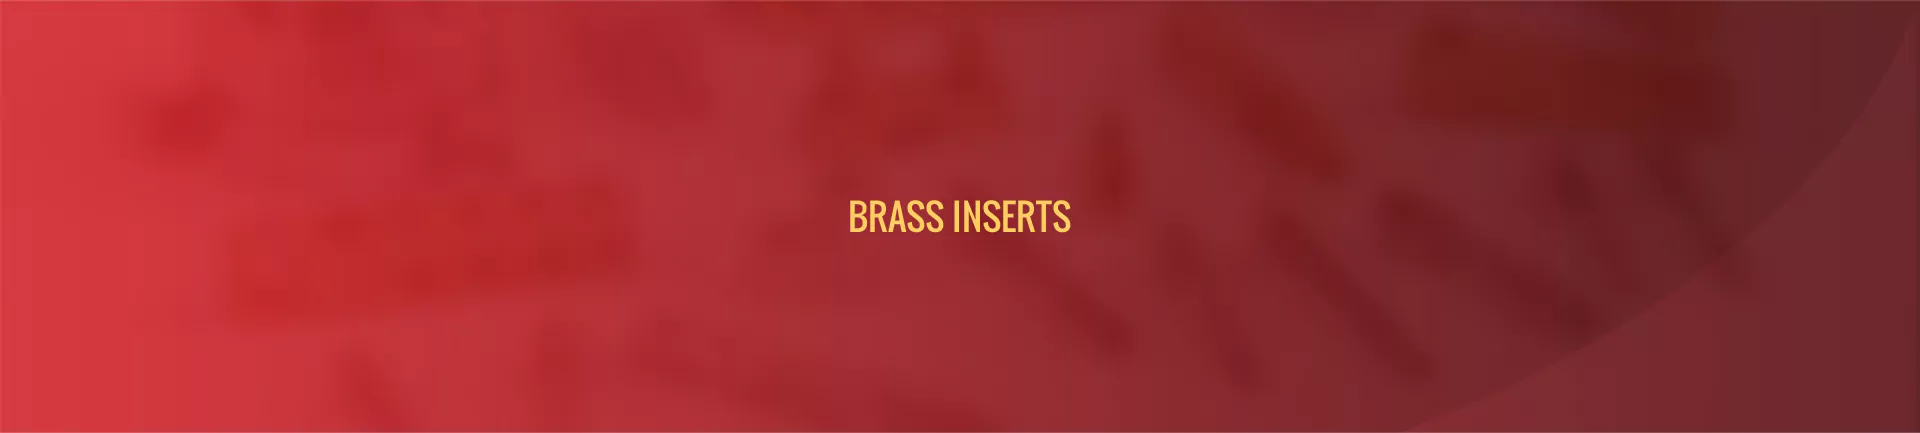 brass-inserts-banner